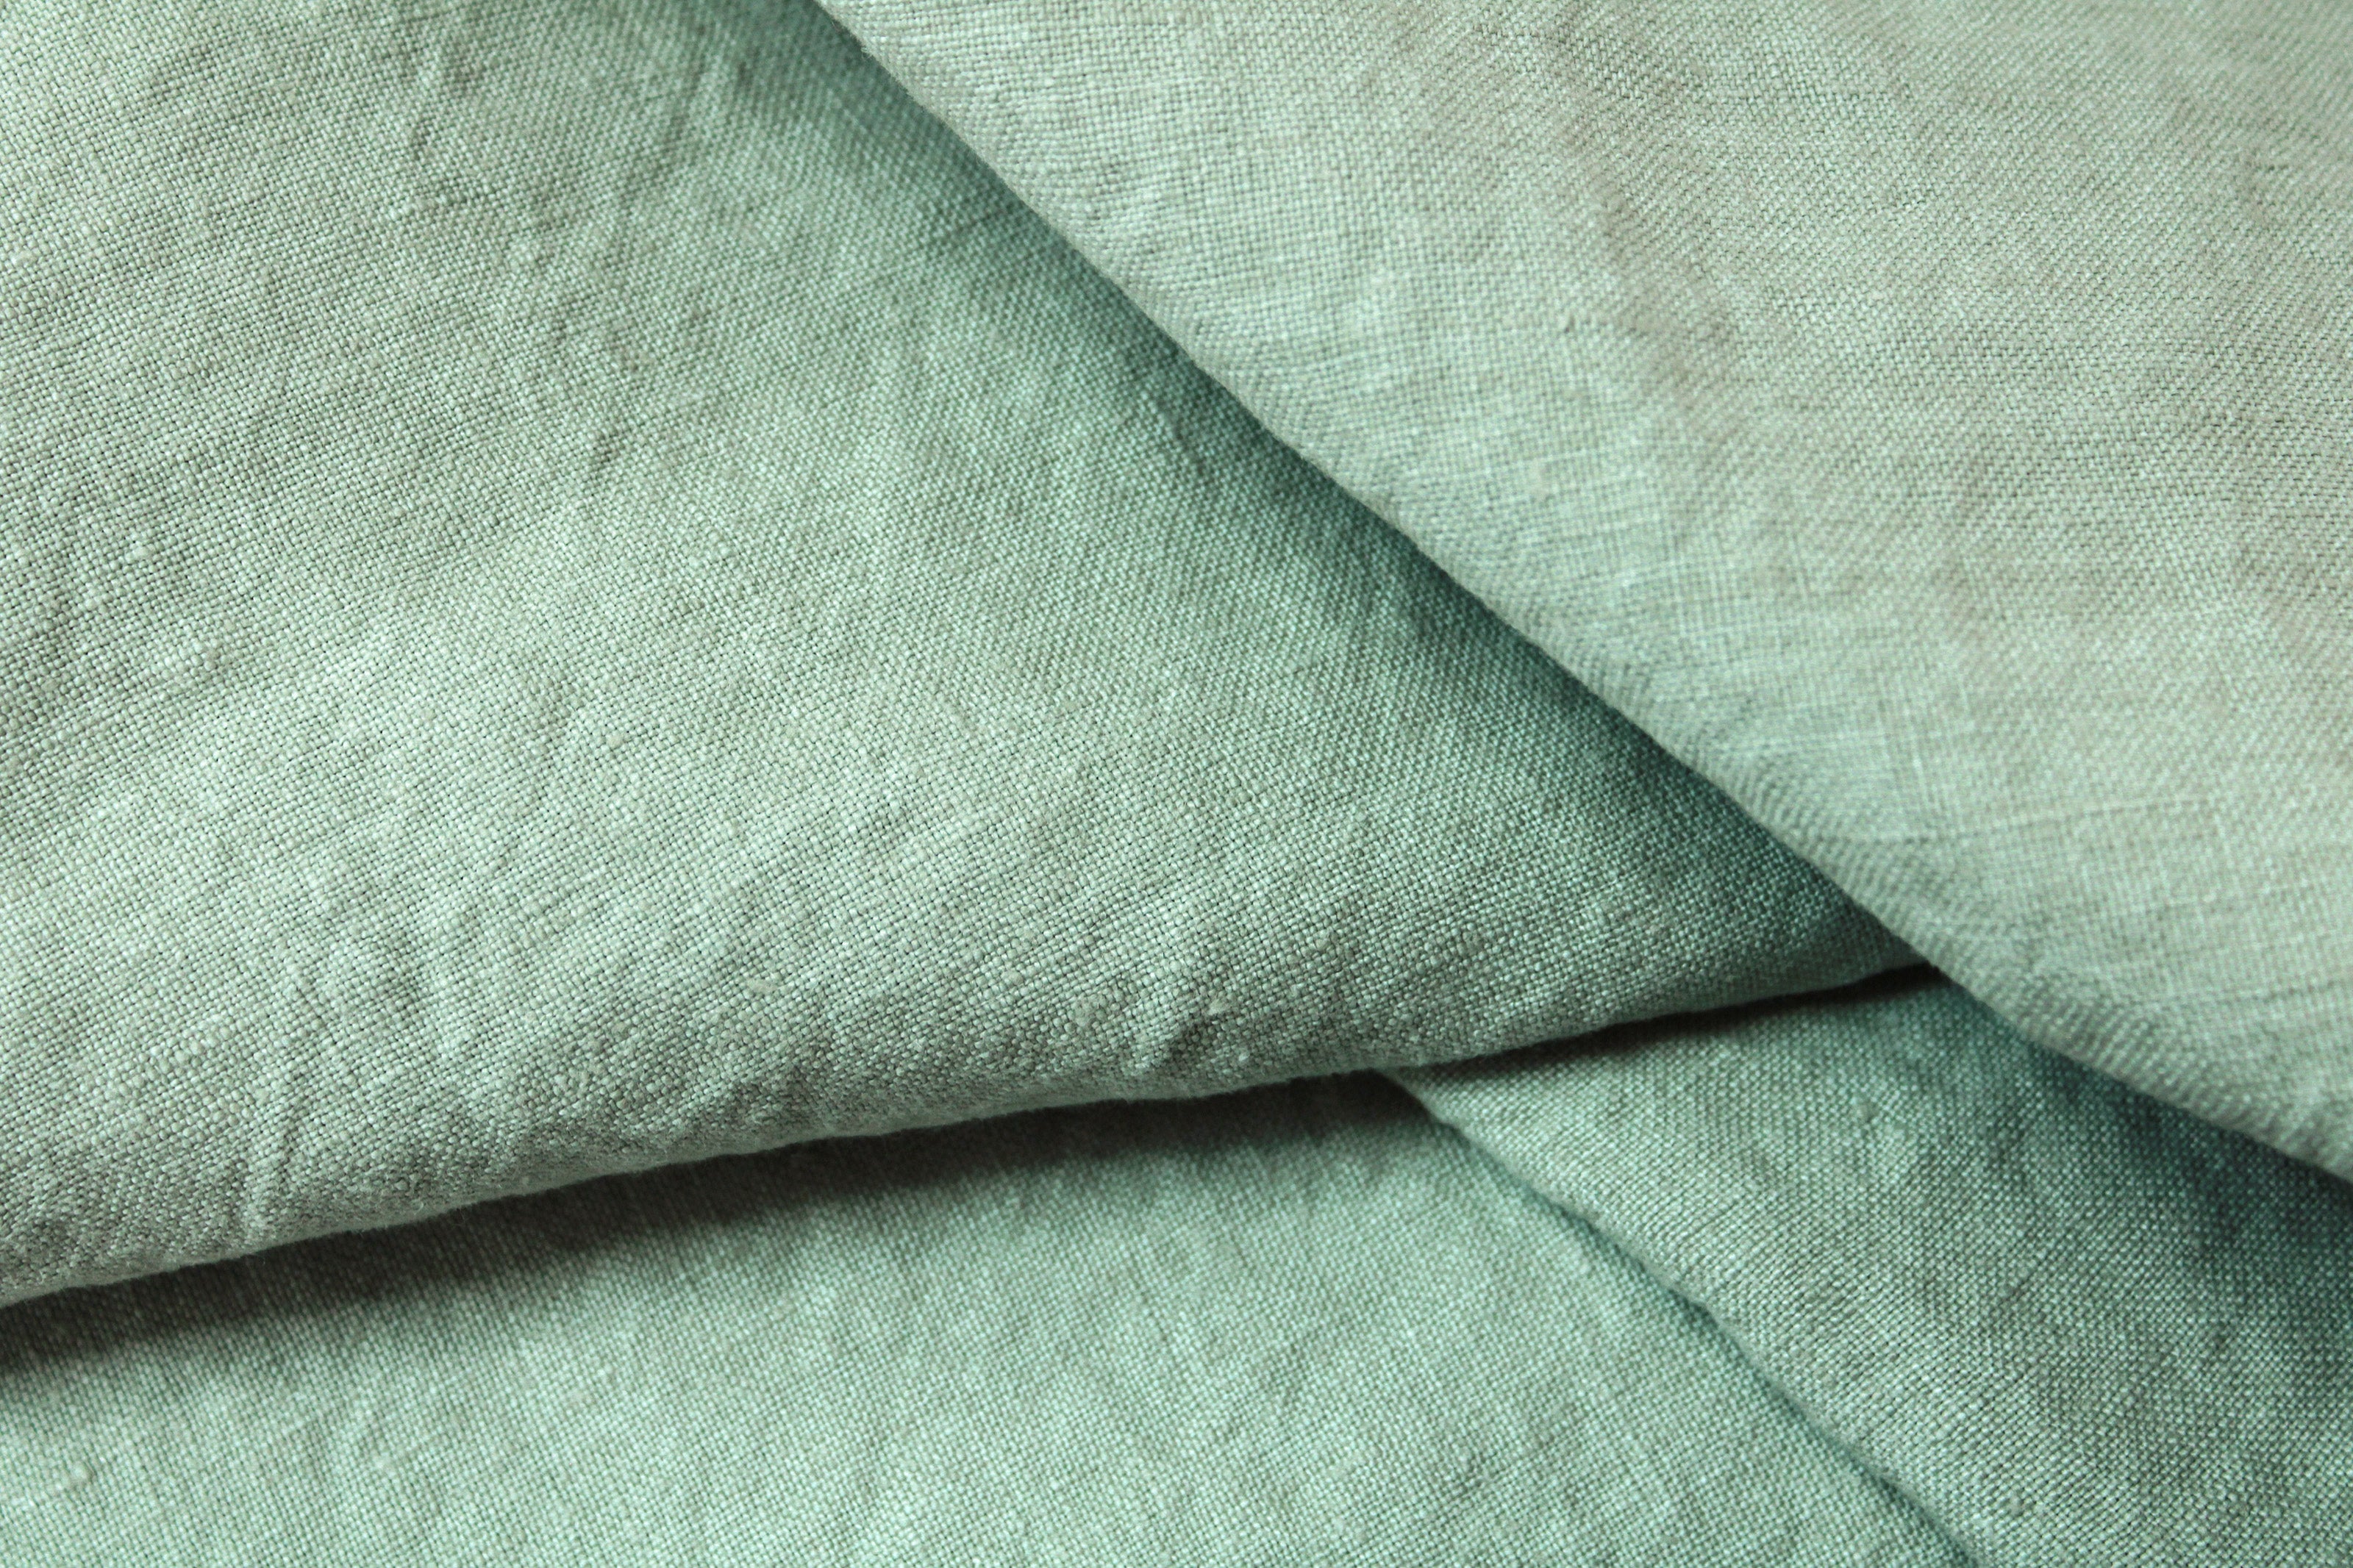 Washed Heavyweight Linen Fabric / Aqua Linen Fabric